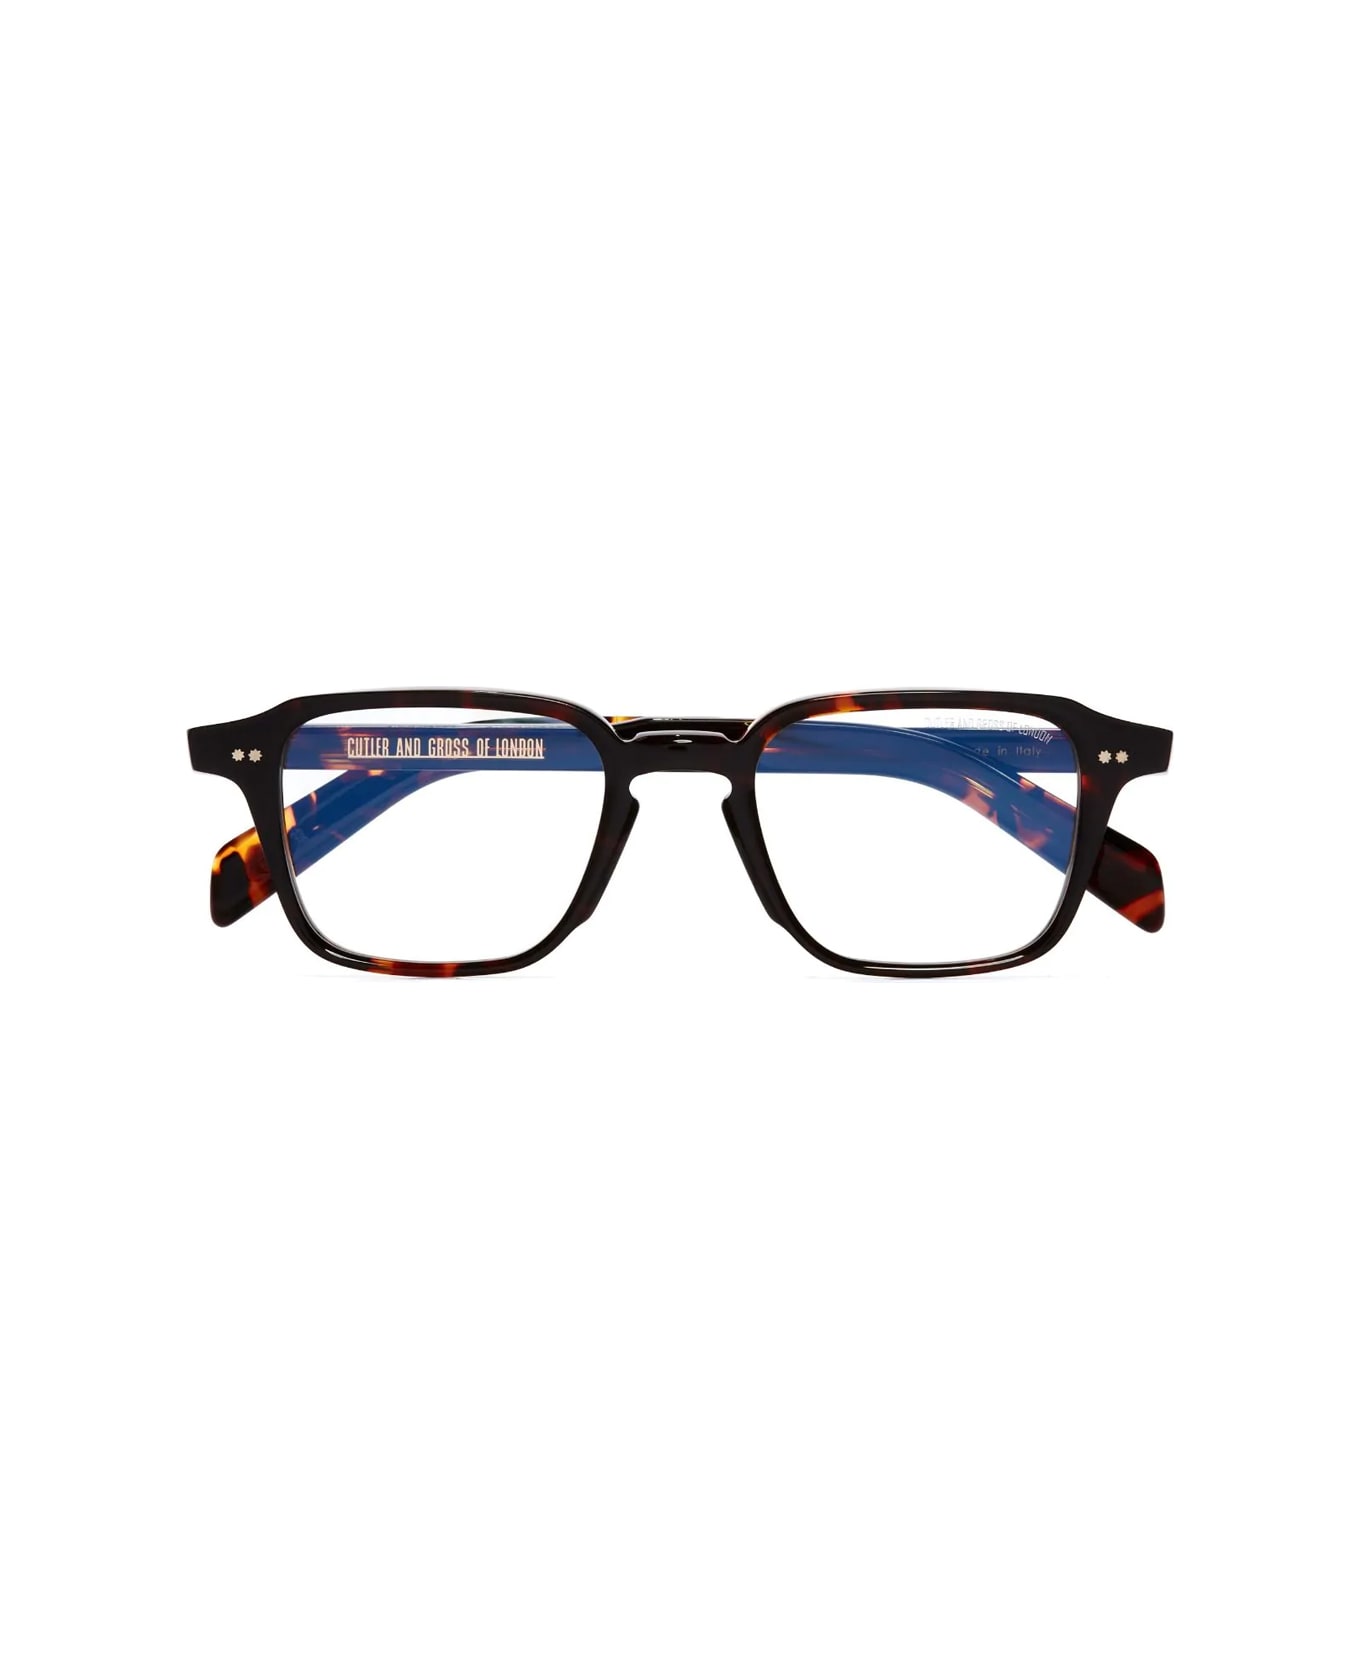 Cutler and Gross Gr07 02 Multi Havana Glasses - Marrone アイウェア